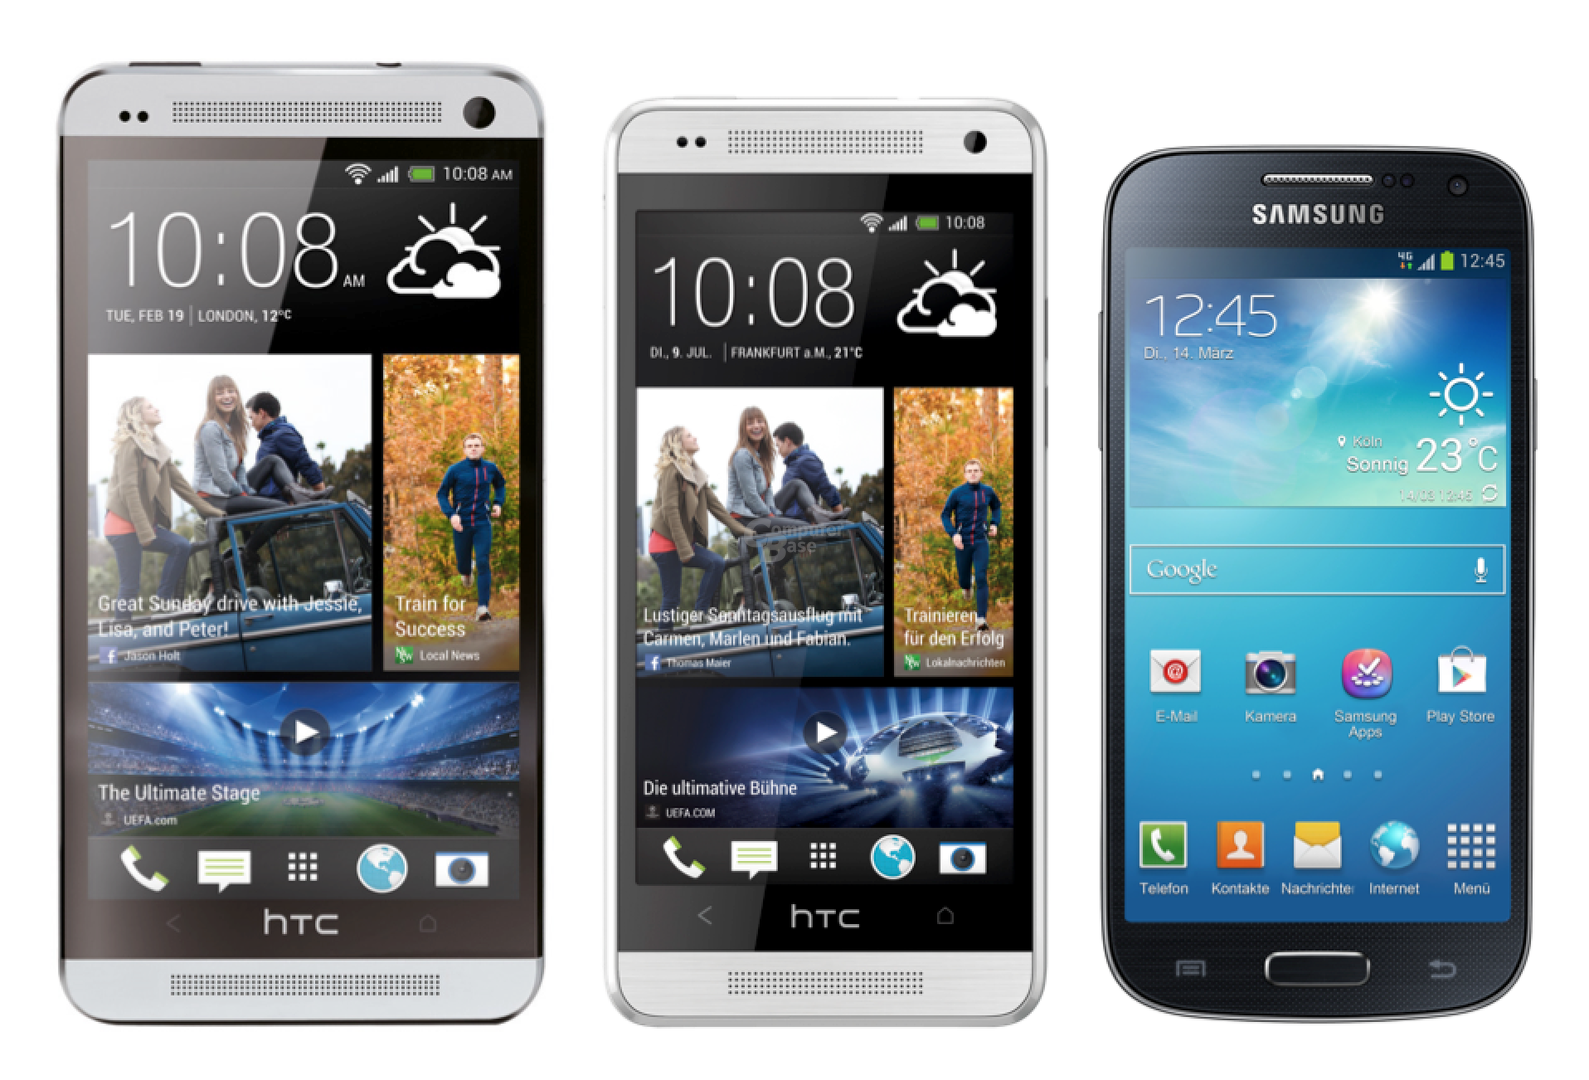 v.l.n.r.: HTC One, One mini, Samsung Galaxy S4 mini